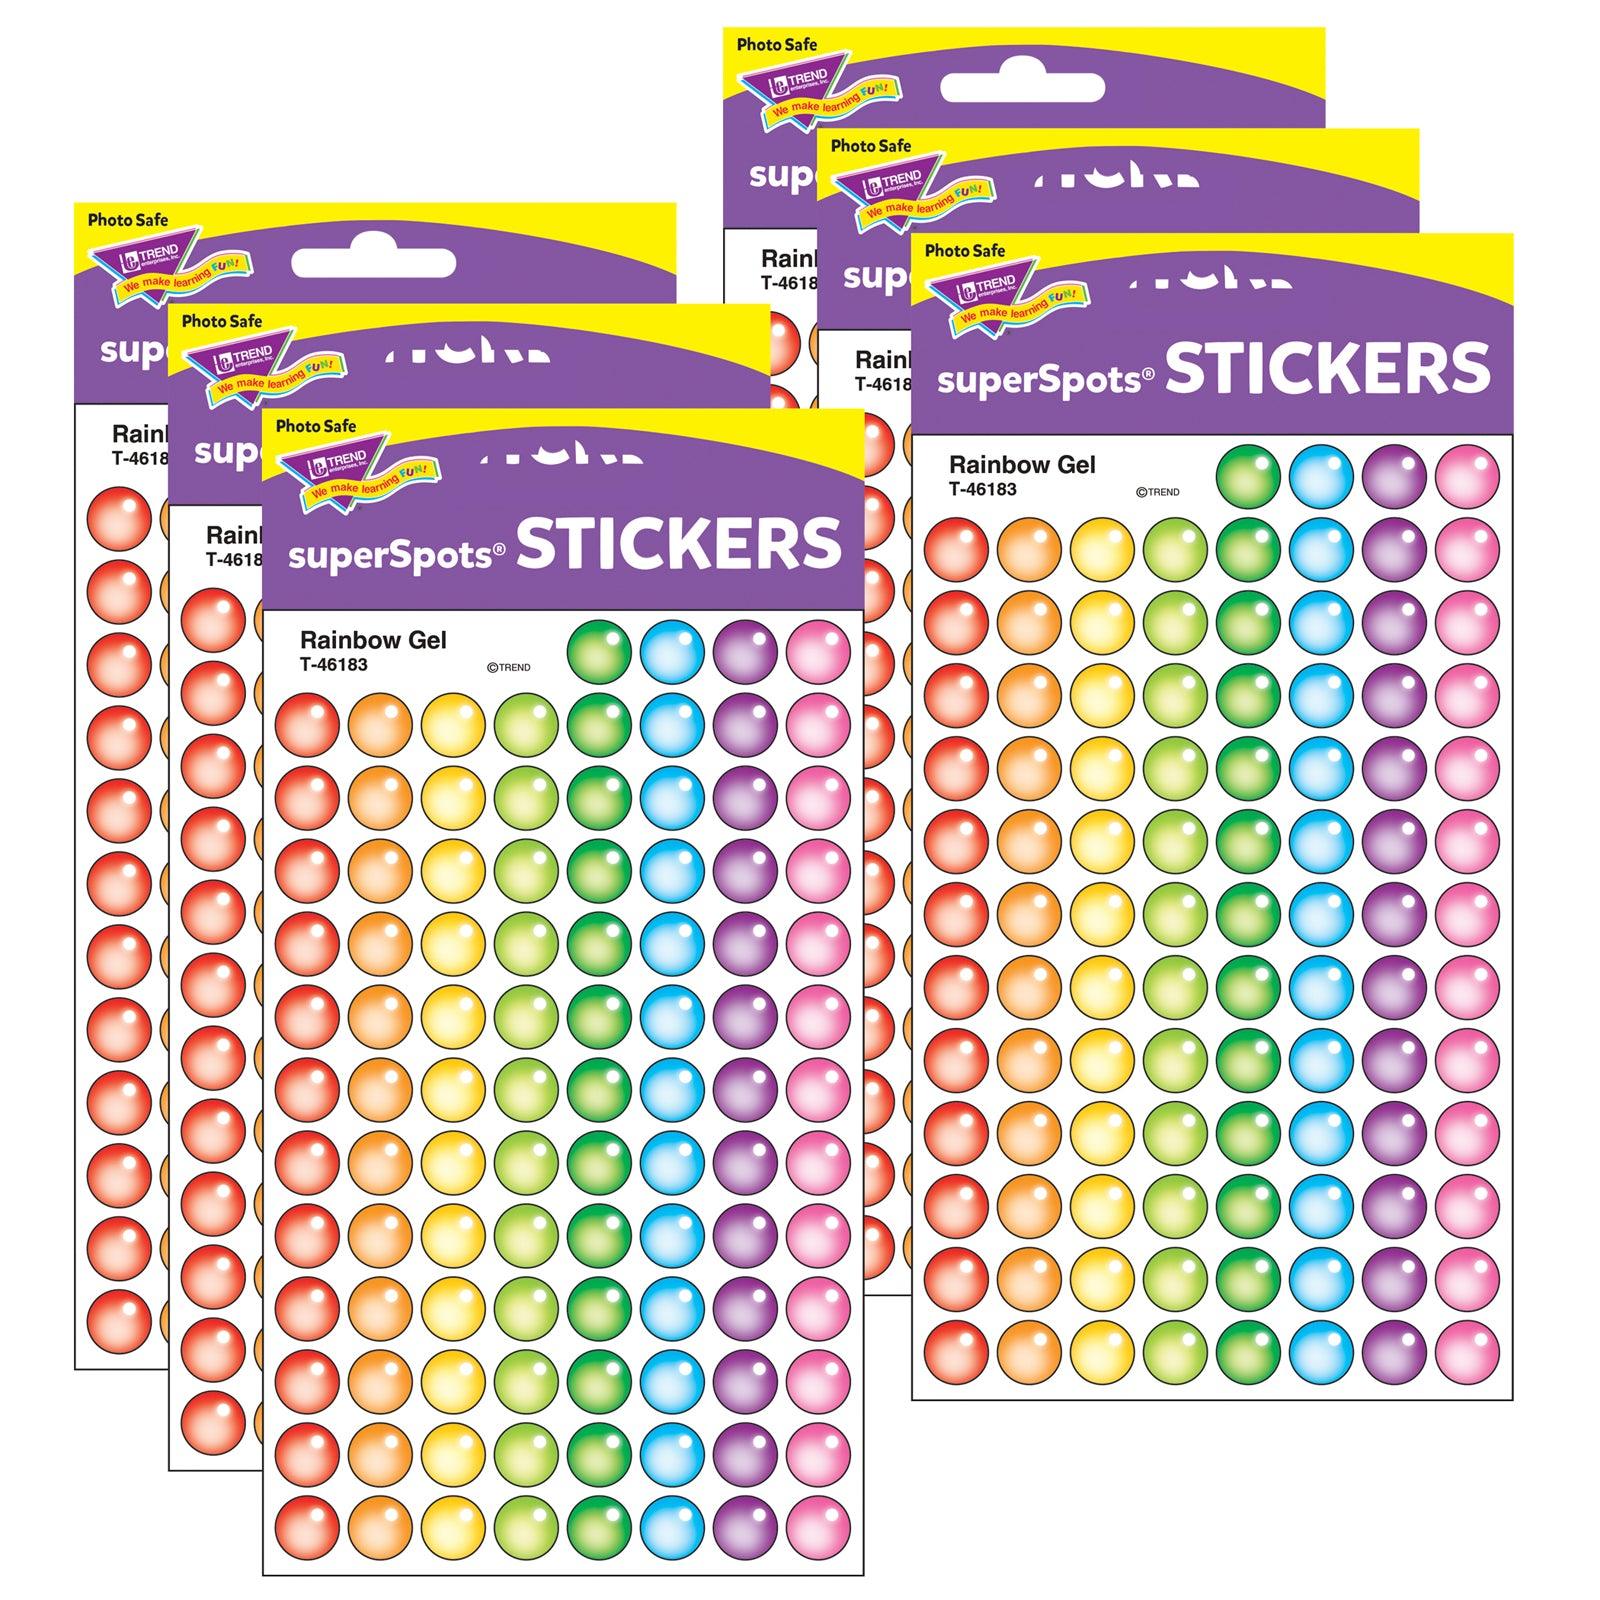 Rainbow Gel superSpots® Stickers, 800 Per Pack, 6 Packs - Loomini